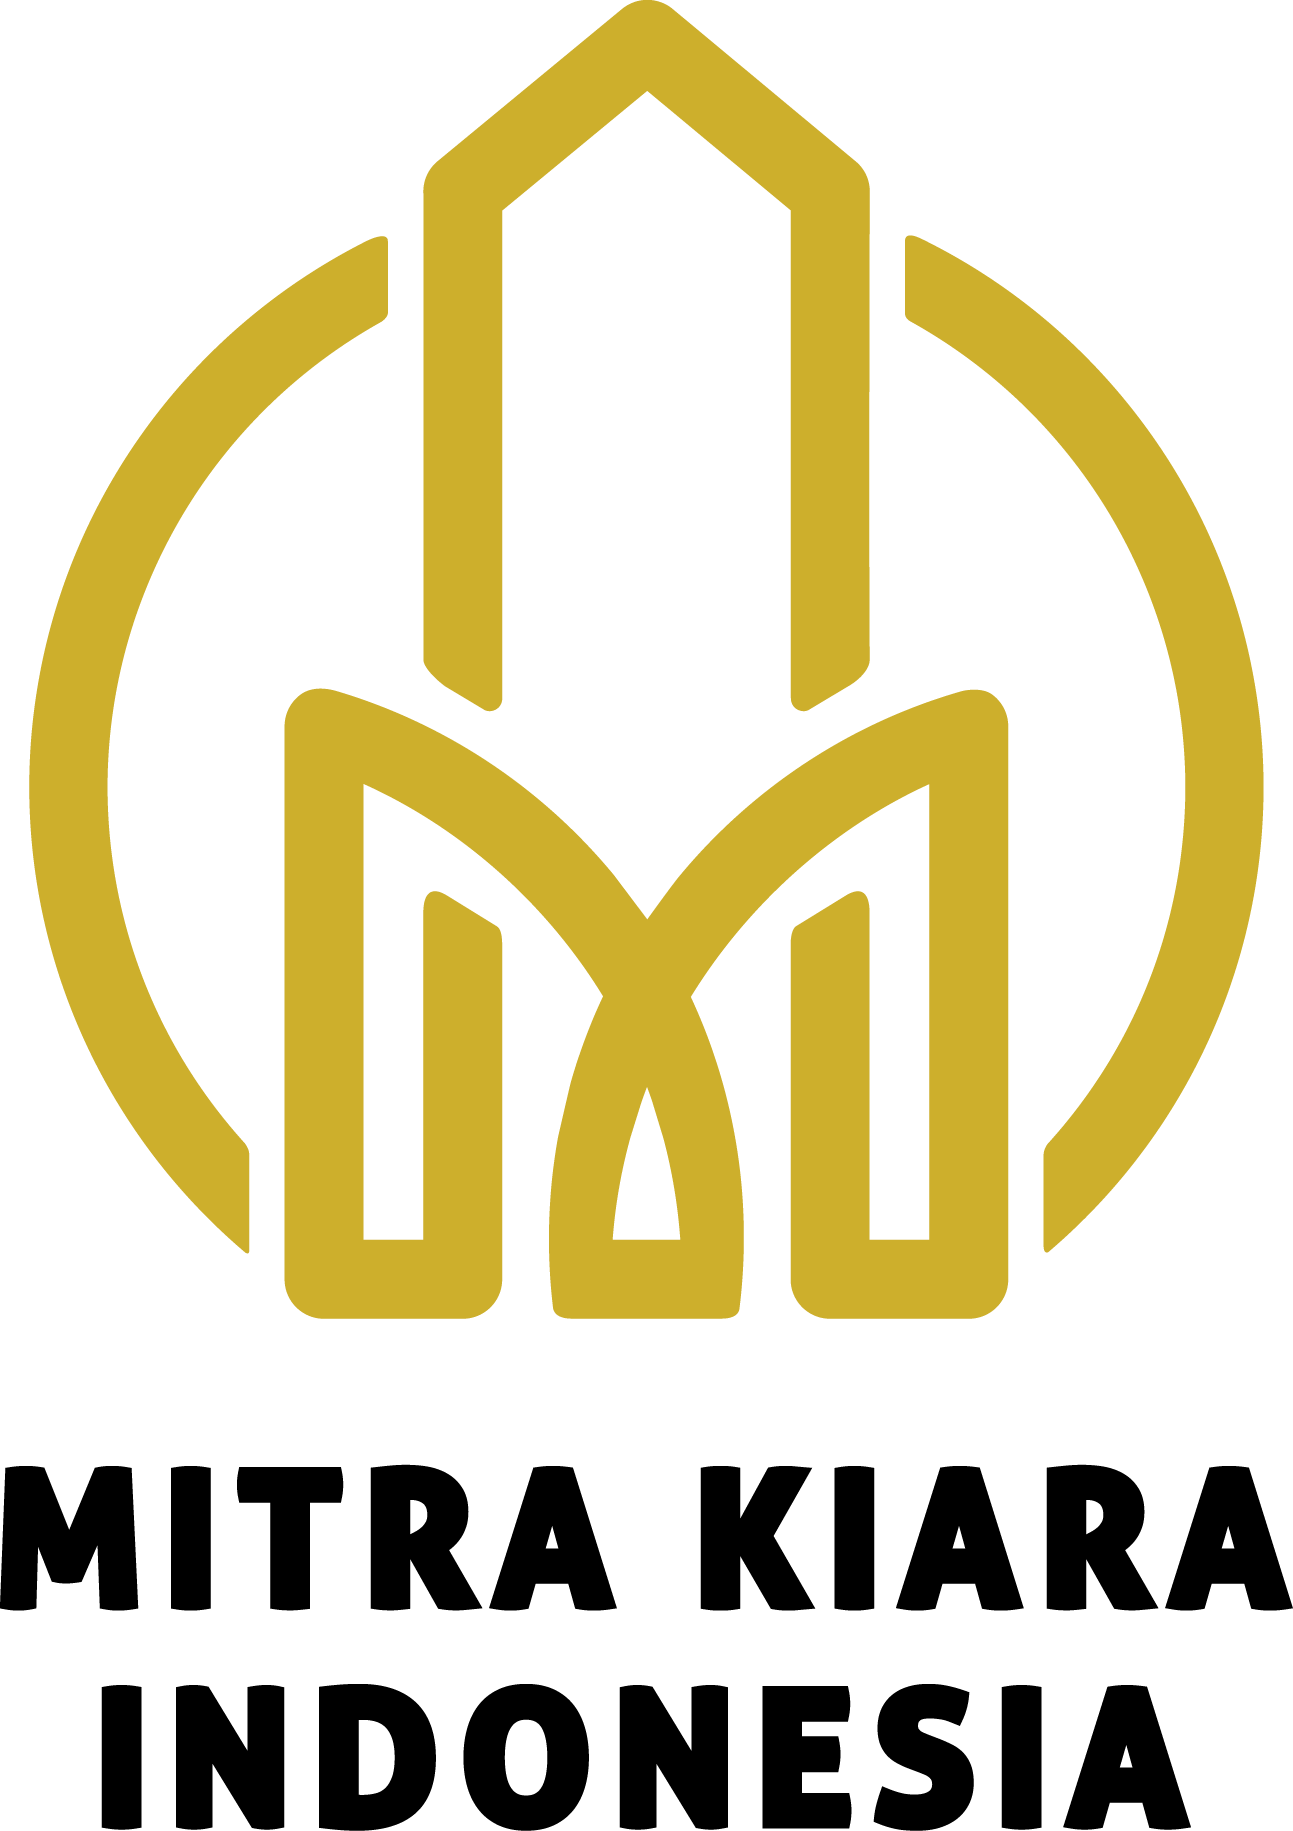 Sanza theme logo